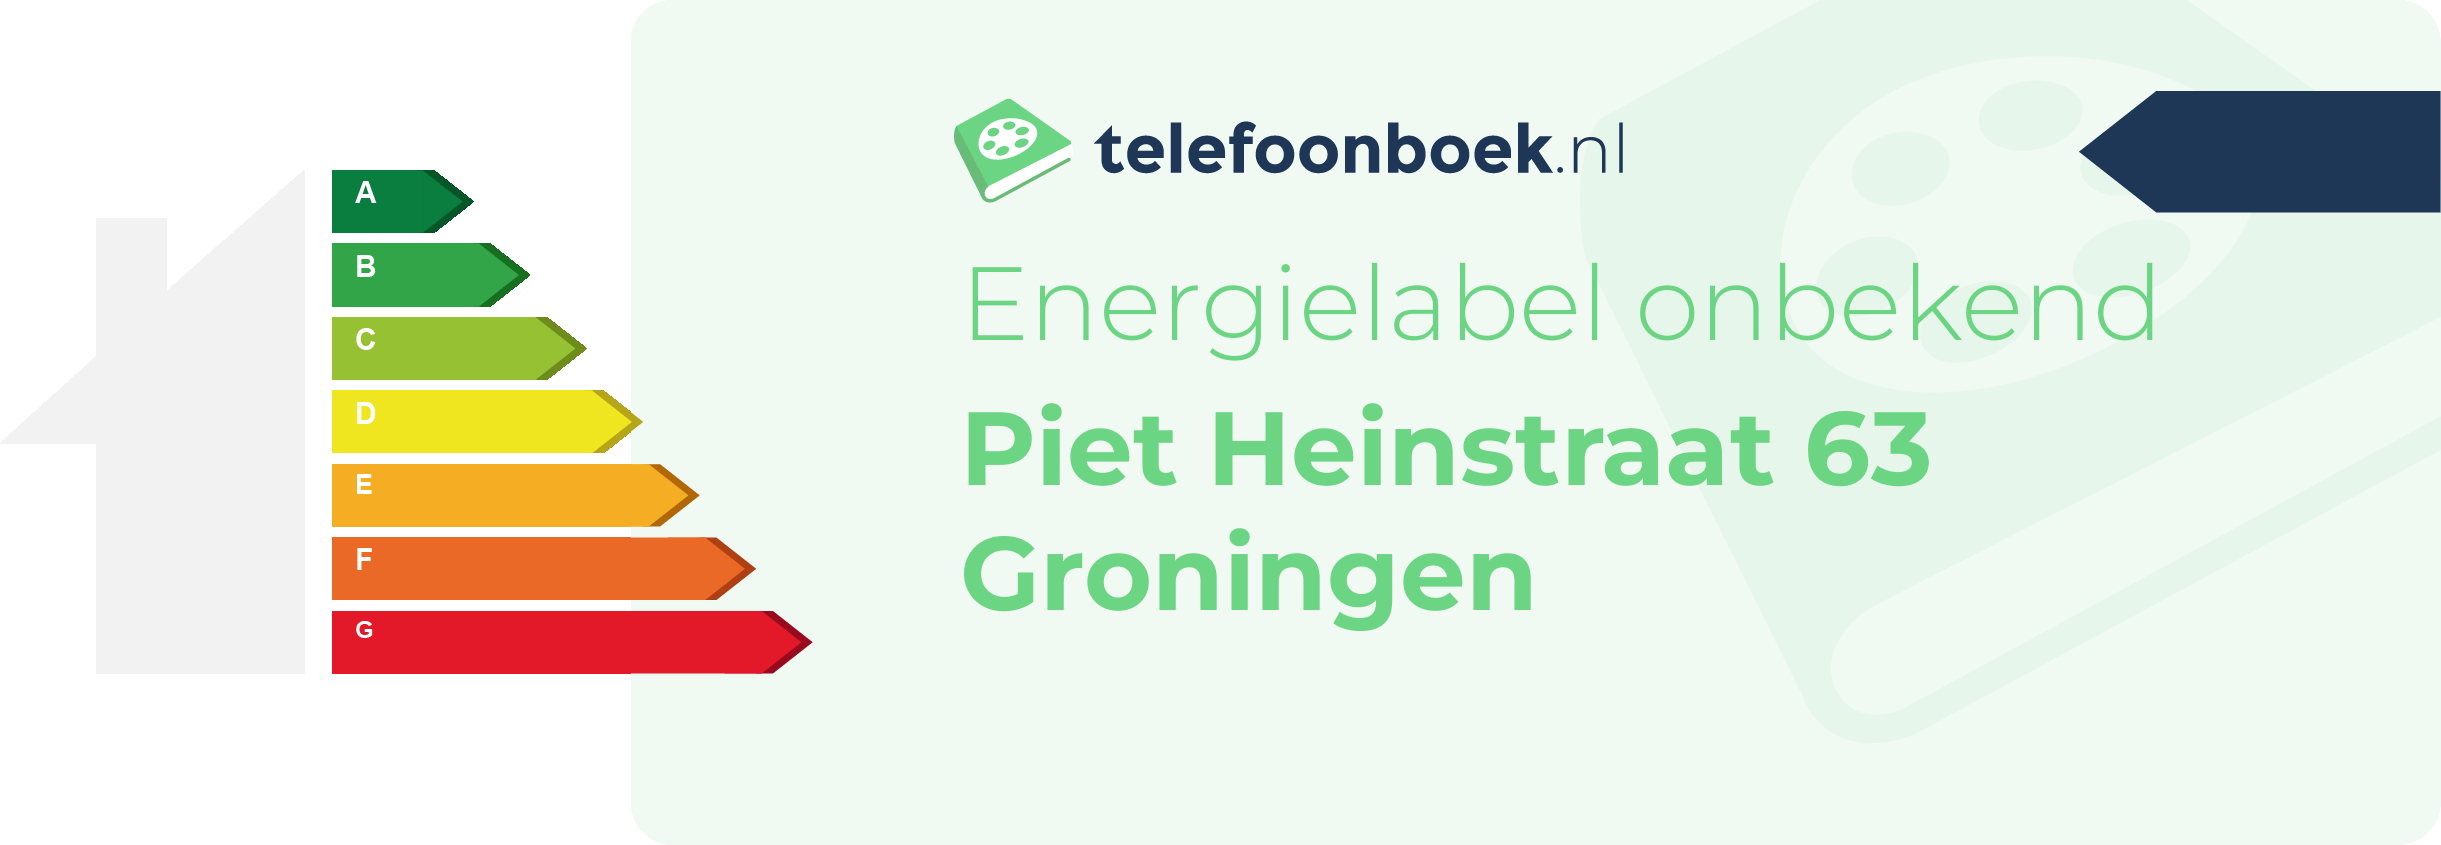 Energielabel Piet Heinstraat 63 Groningen